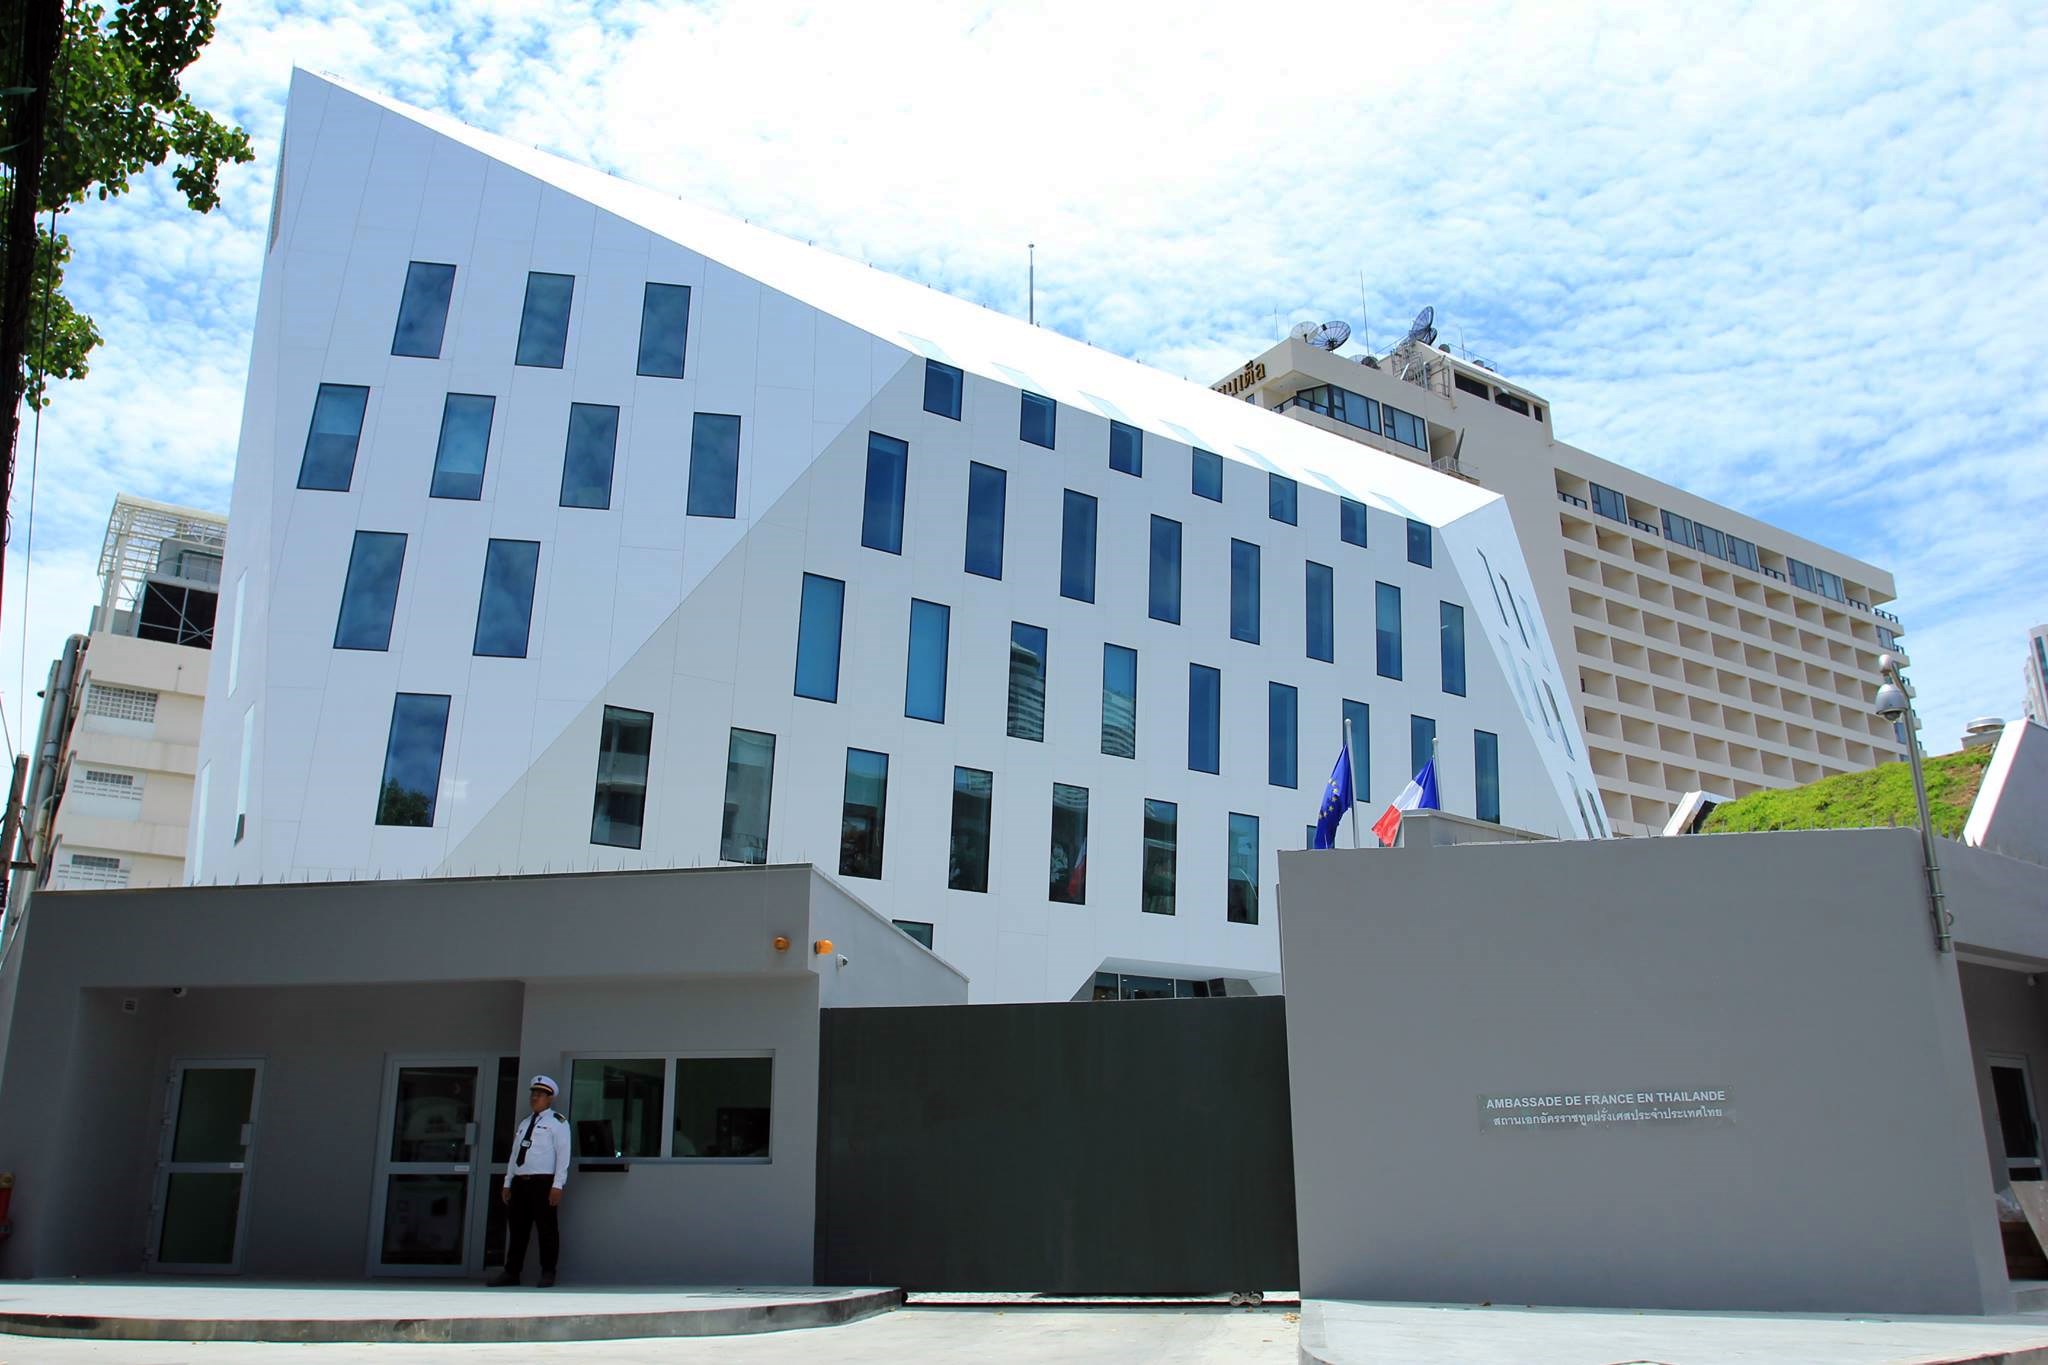 Ambassade de France en Thaïlande. Photo : https://www.facebook.com/pages/Ambassade-de-France-en-Tha%C3%AFlande/594735013884855